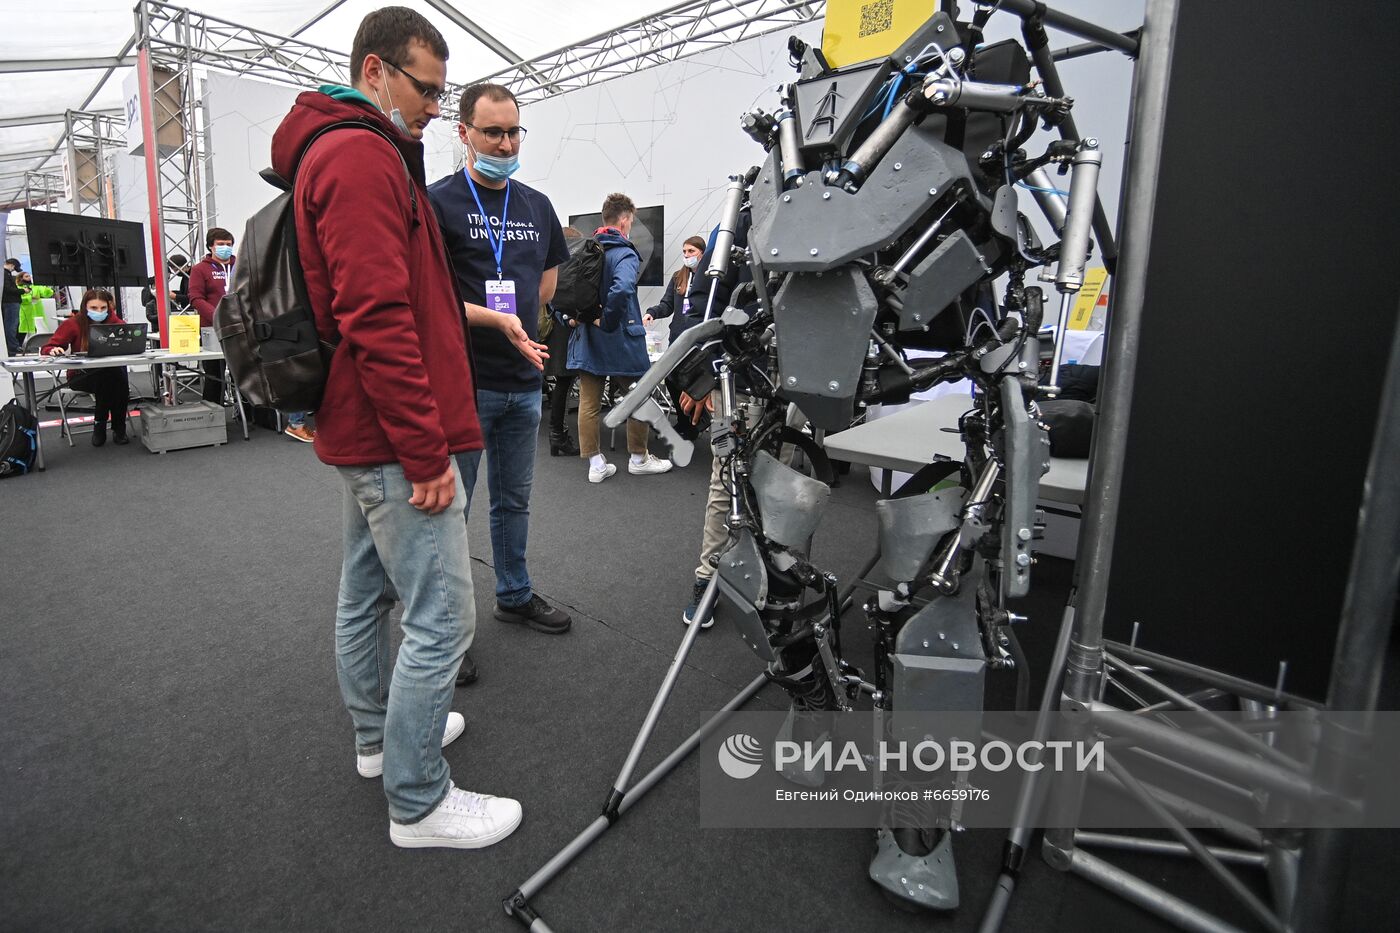 Всероссийский фестиваль технических достижений "Техносреда" 